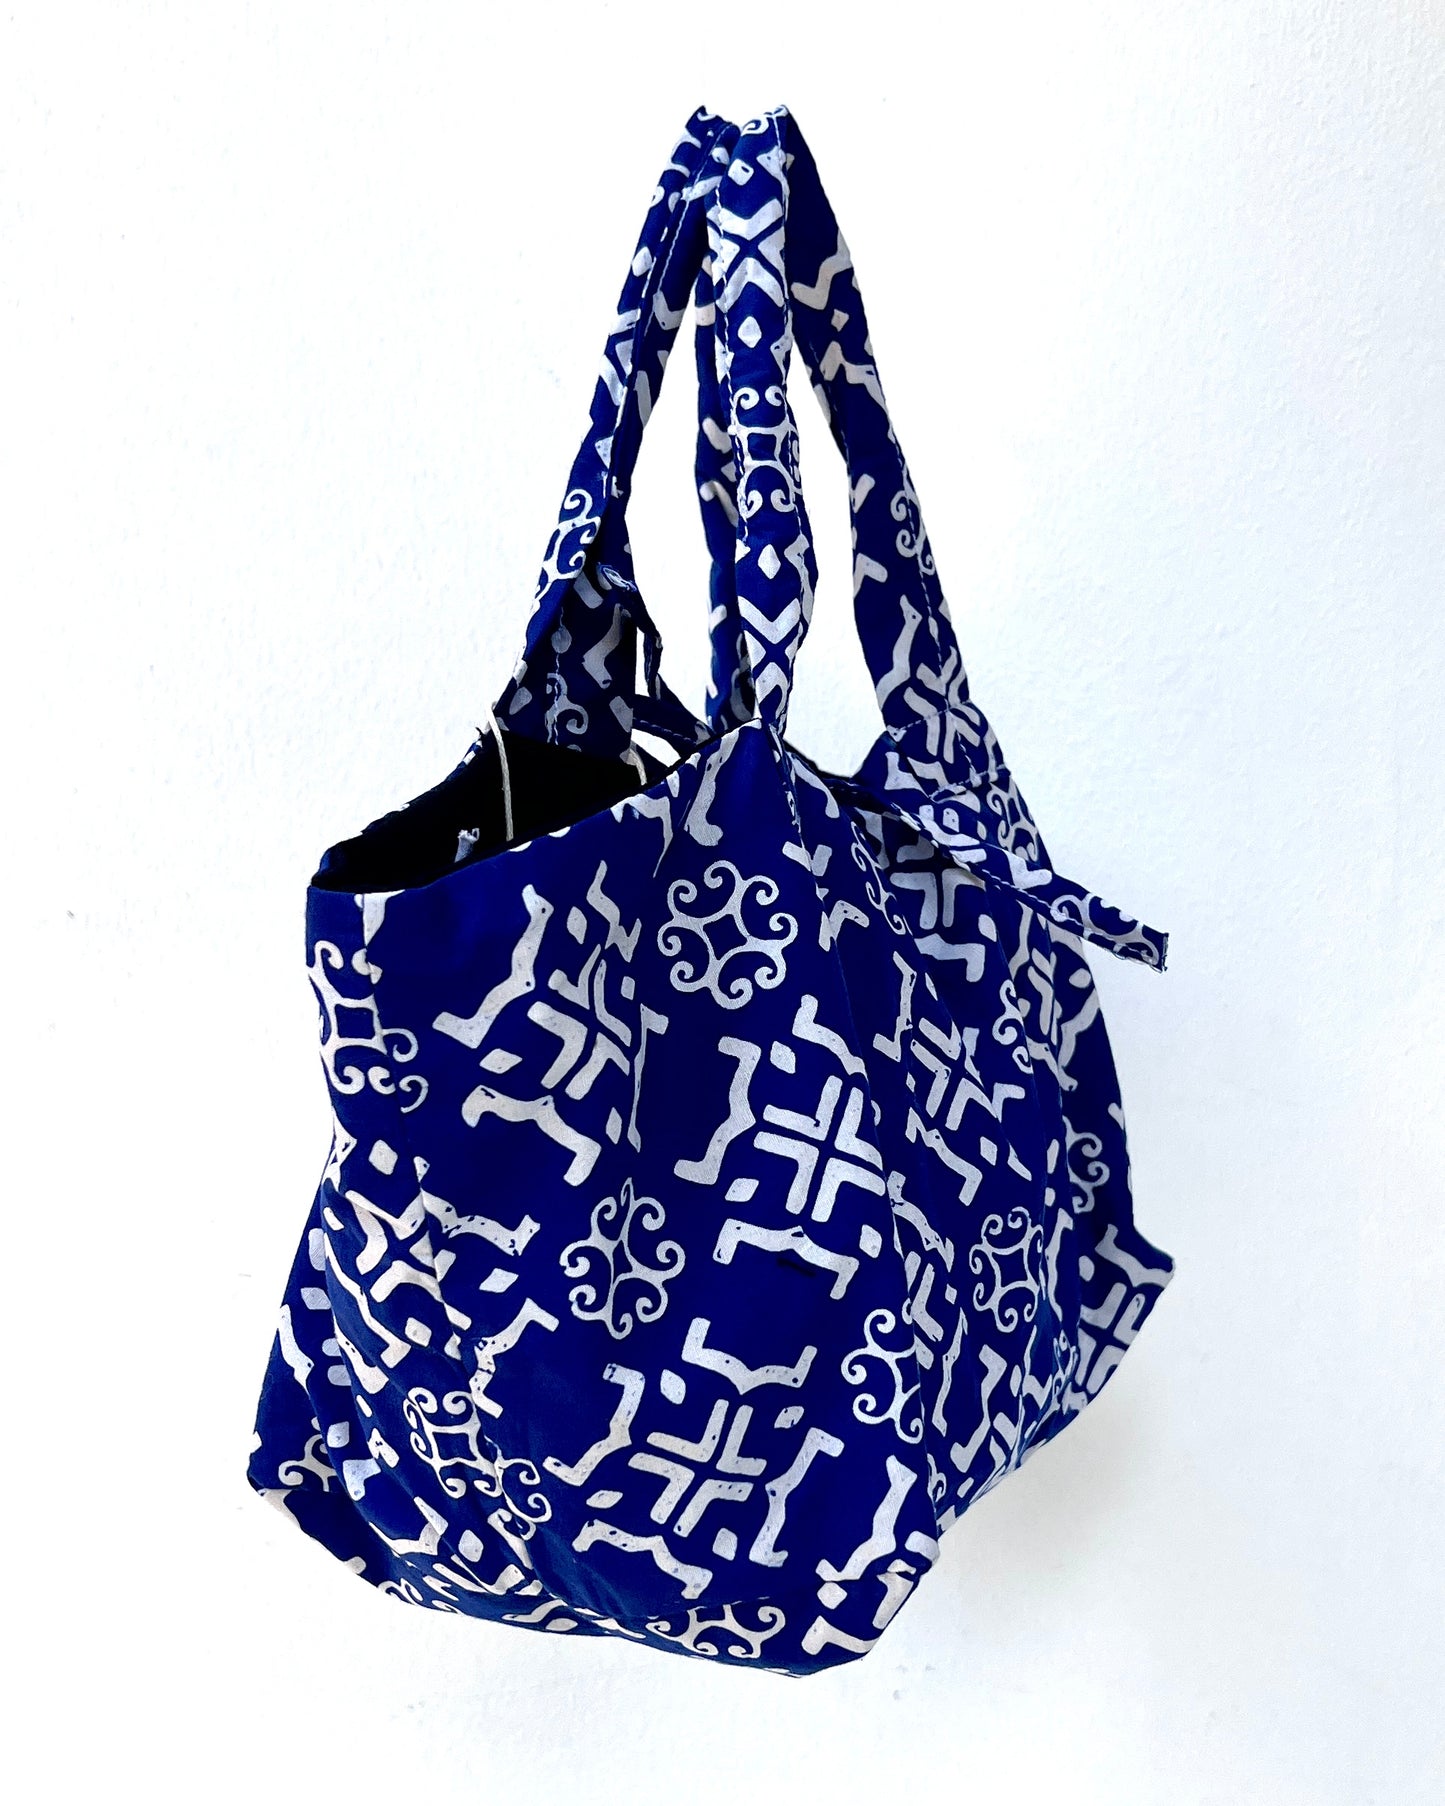 Joy Cotton Batik Bag - Tribal Blue